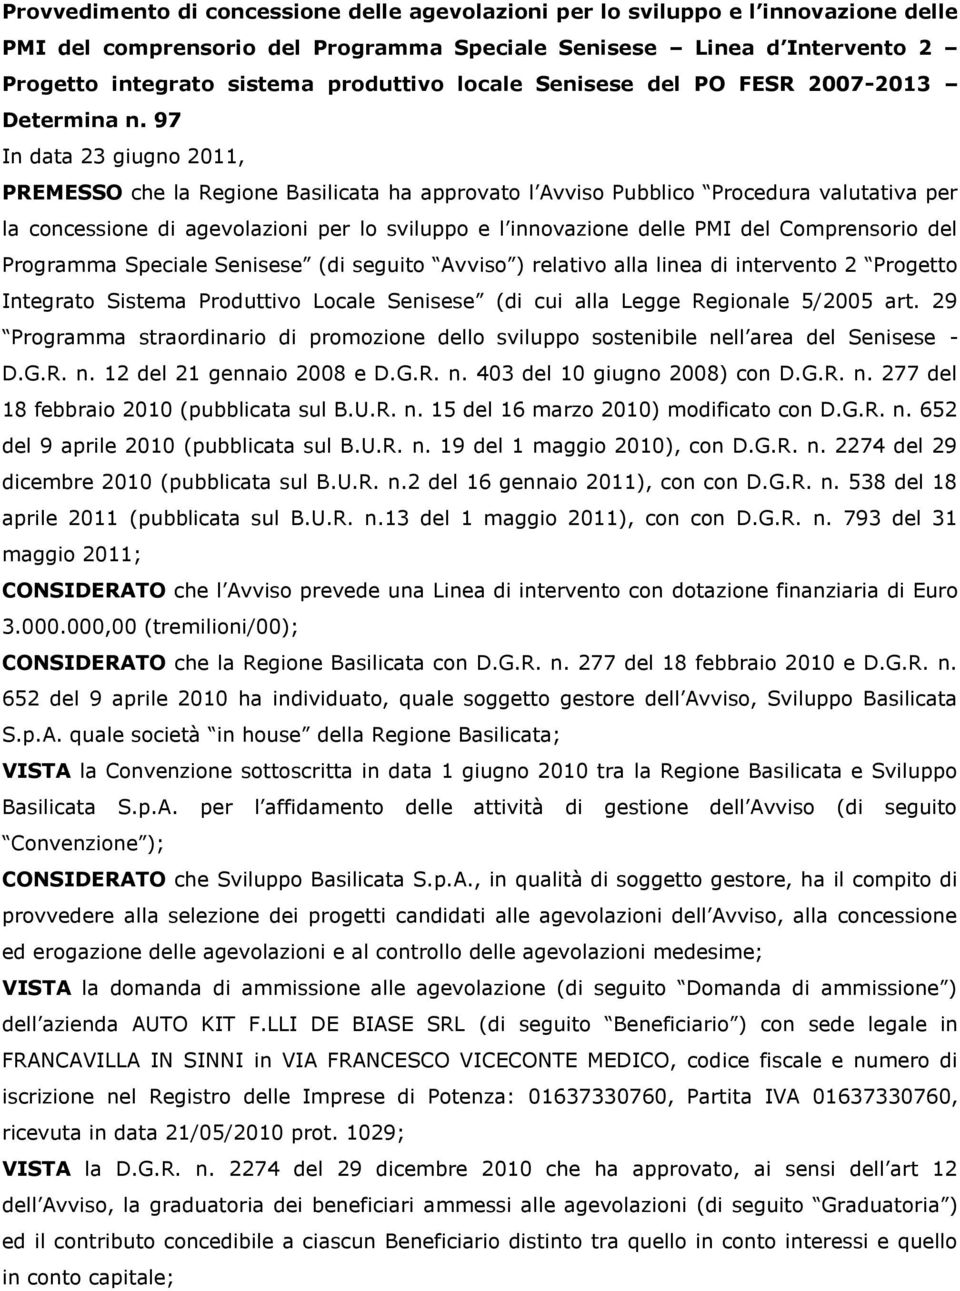 97 In data 23 giugn 2011, PREMESSO che la Regine Basilicata ha apprvat l Avvis Pubblic Prcedura valutativa per la cncessine di agevlazini per l svilupp e l innvazine delle PMI del Cmprensri del